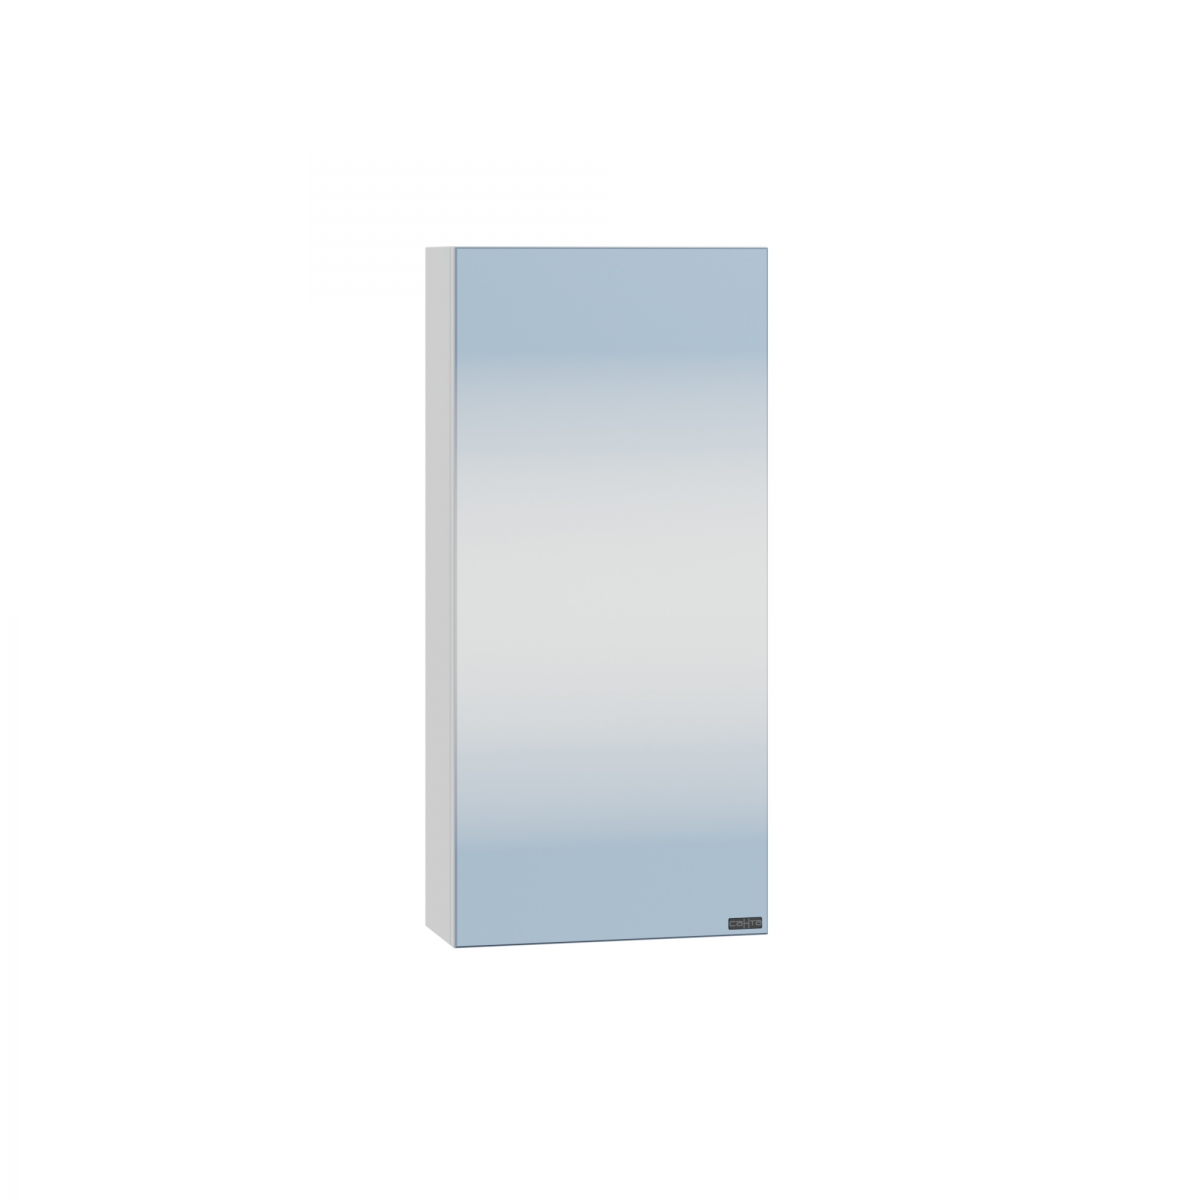 Зеркальный шкаф СанТа Аврора 30 см 700330 подвесной, белый зеркальный шкаф sintesi